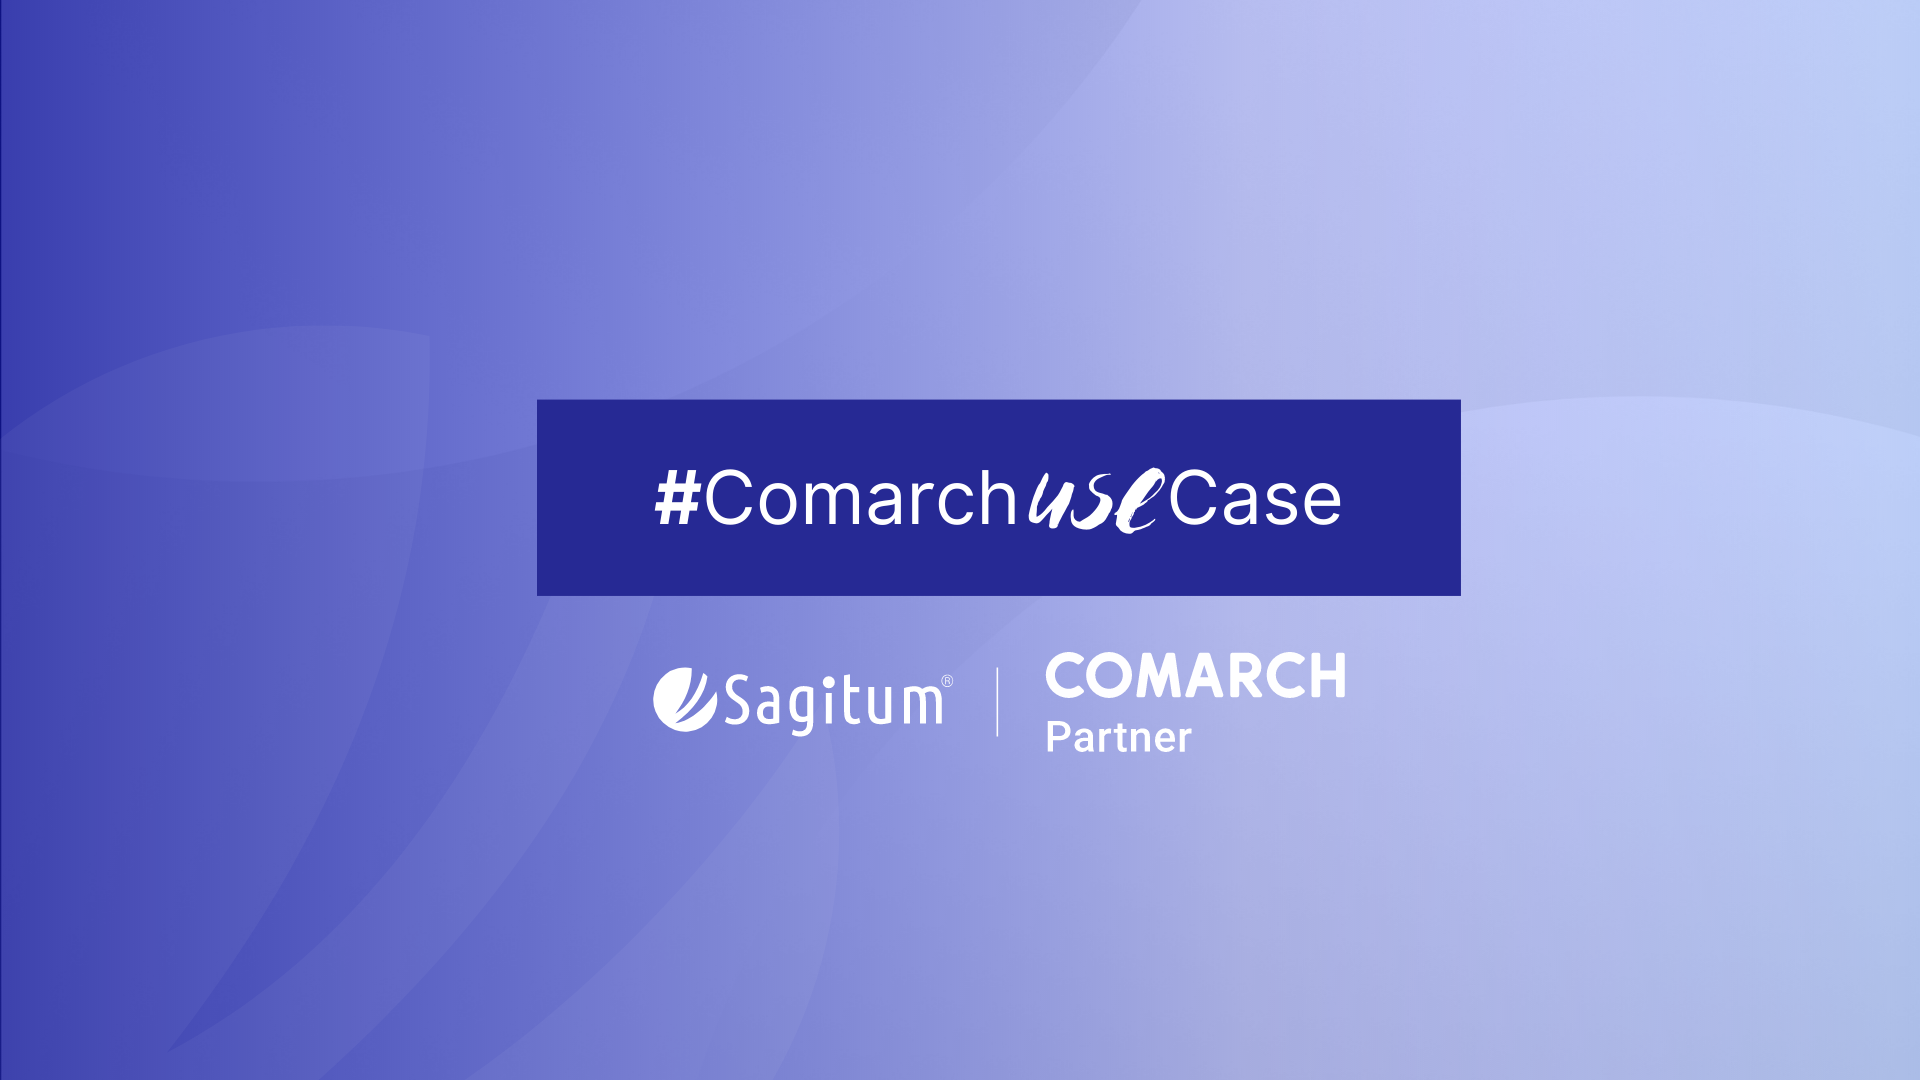 #ComarchUseCase: jak zarządzać dyspozycjami magazynowymi z Comarch WMS?